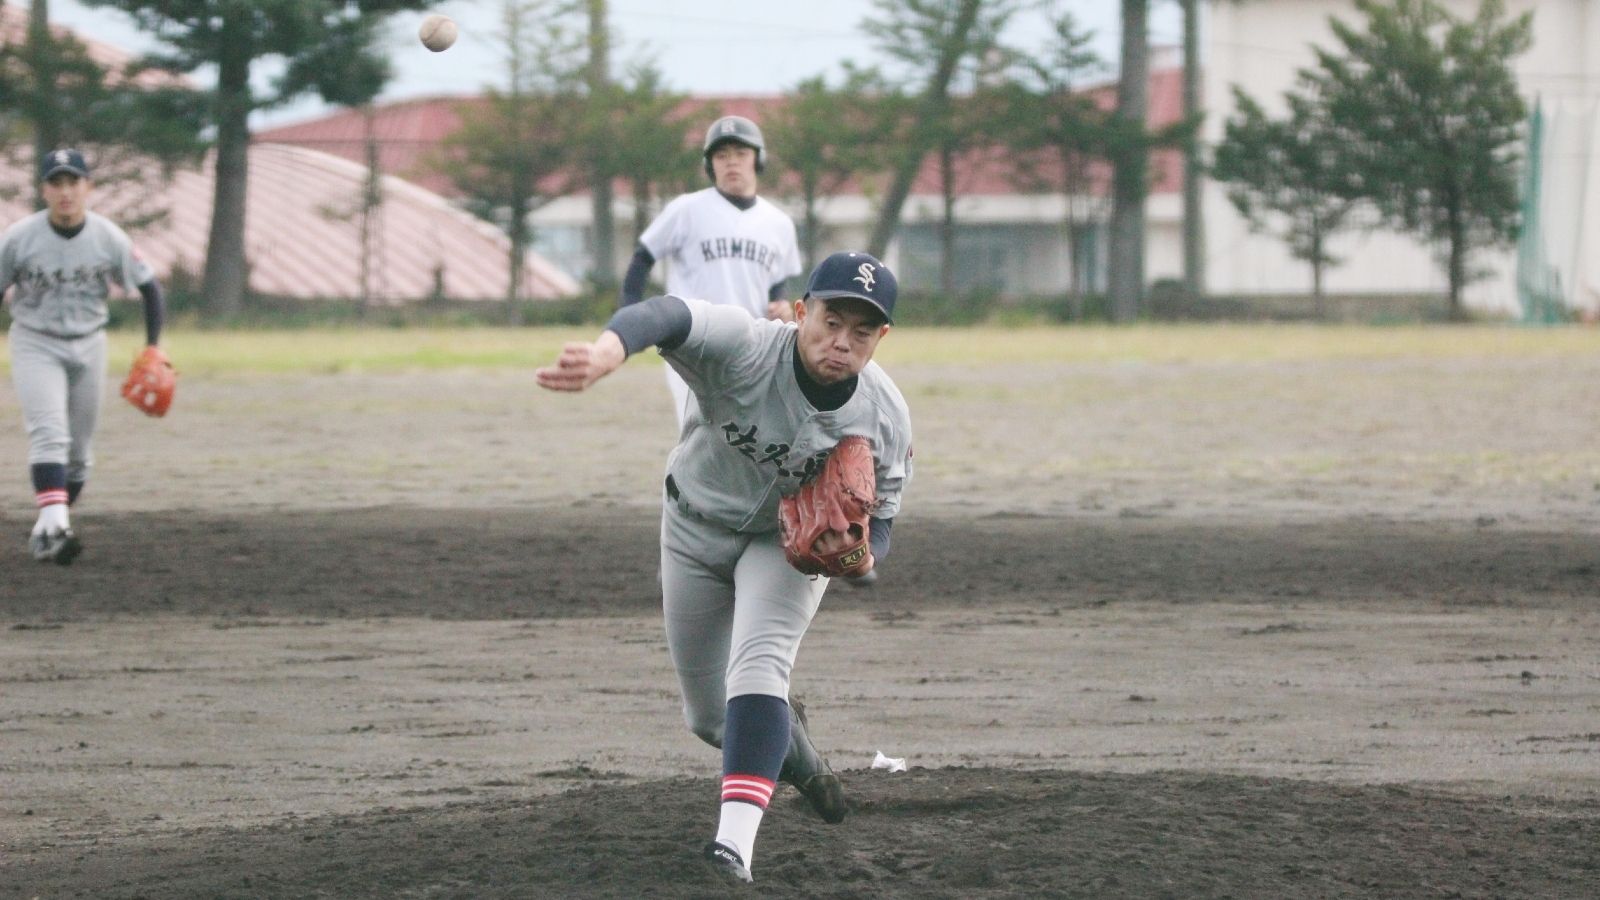 ｢甲子園のアンチテーゼ｣を行く高校野球の凄み 脱｢勝利至上主義｣で全員出場のLiga Futura | 日本野球の今そこにある危機 | 東洋経済オンライン